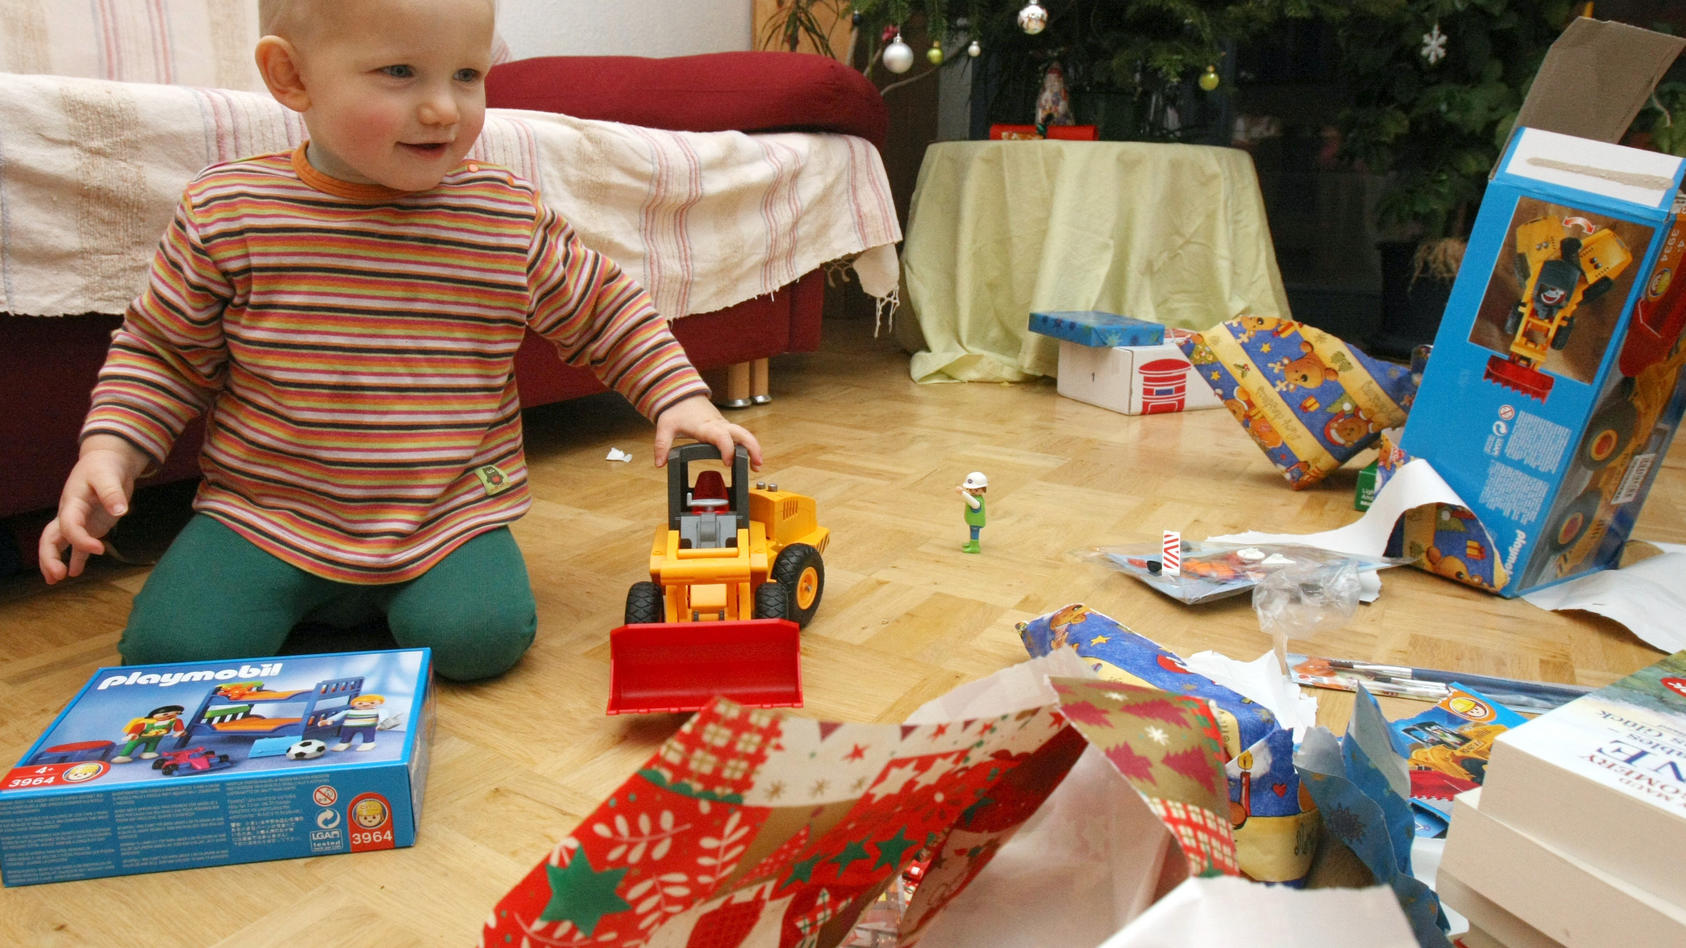 ARCHIV  - Der kleine Janne freut sich an Weihnachten beim Auspacken seiner Geschenke. Im Hintergrund steht der festlich geschmückte Weihnachtsbaum. Aufnahme vom 24.12.2007. Plätzchen, Weihnachtslieder, ein festlich geschmückter Tannenbaum: Am Heilige